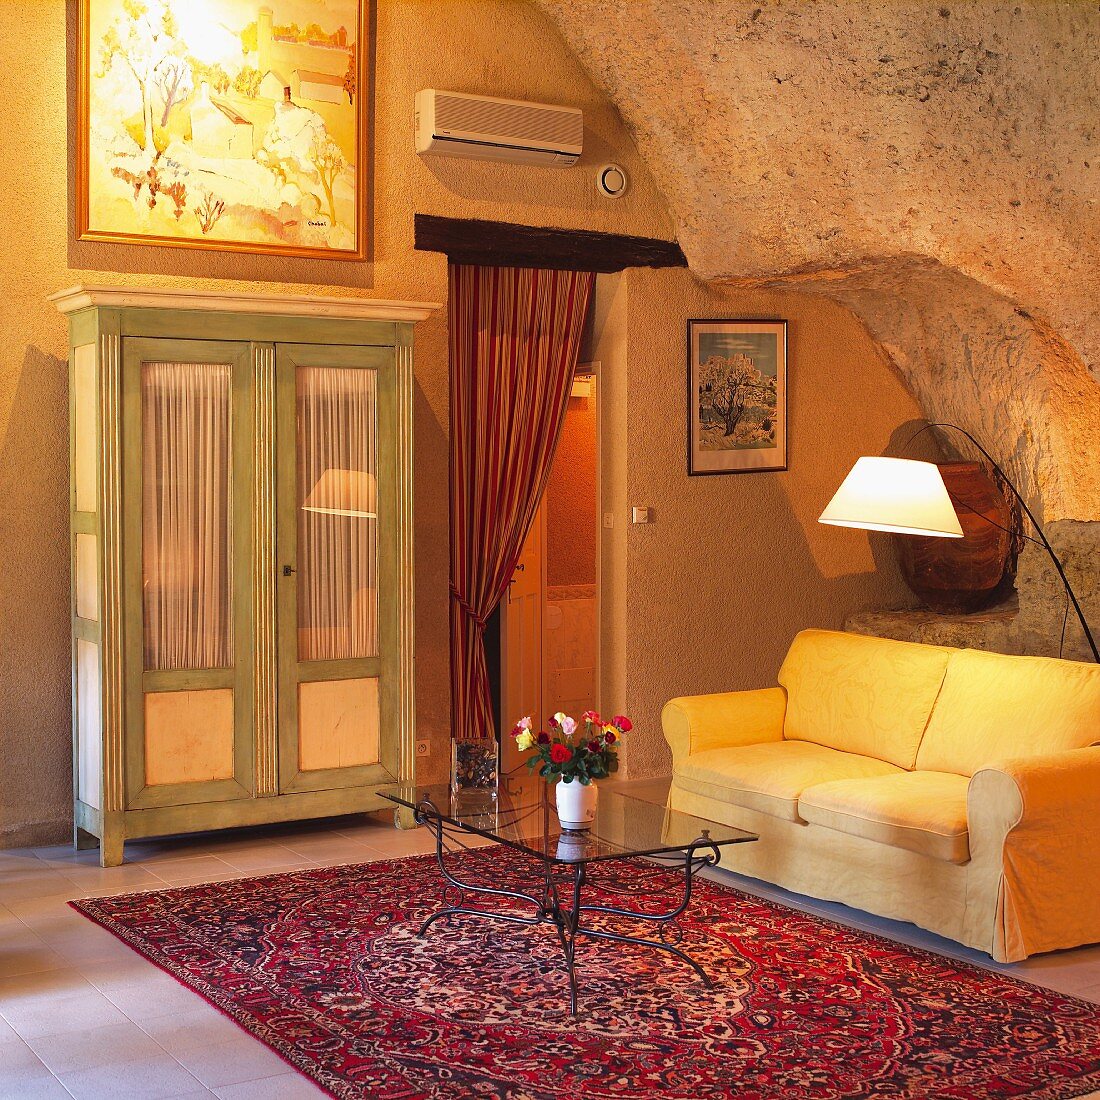 Glastisch auf Orientteppich vor gelber Couch und schlichter Bauern-Vitrinenschrank im Wohnraum mit felsenartiger Wand